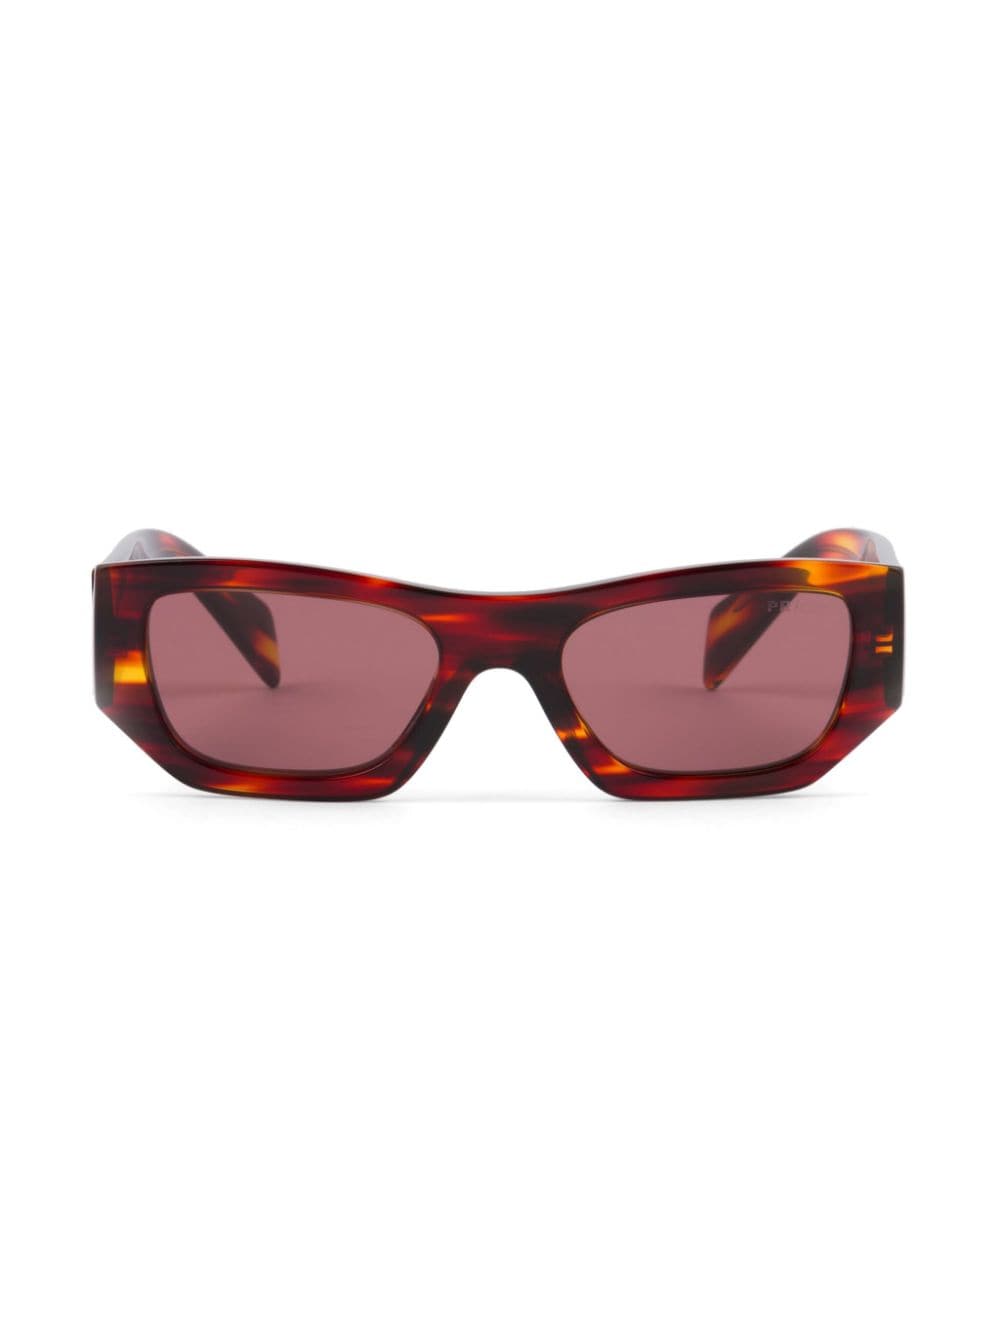 Prada Cat-eye Tortoiseshell-effect Sunglasses In Red